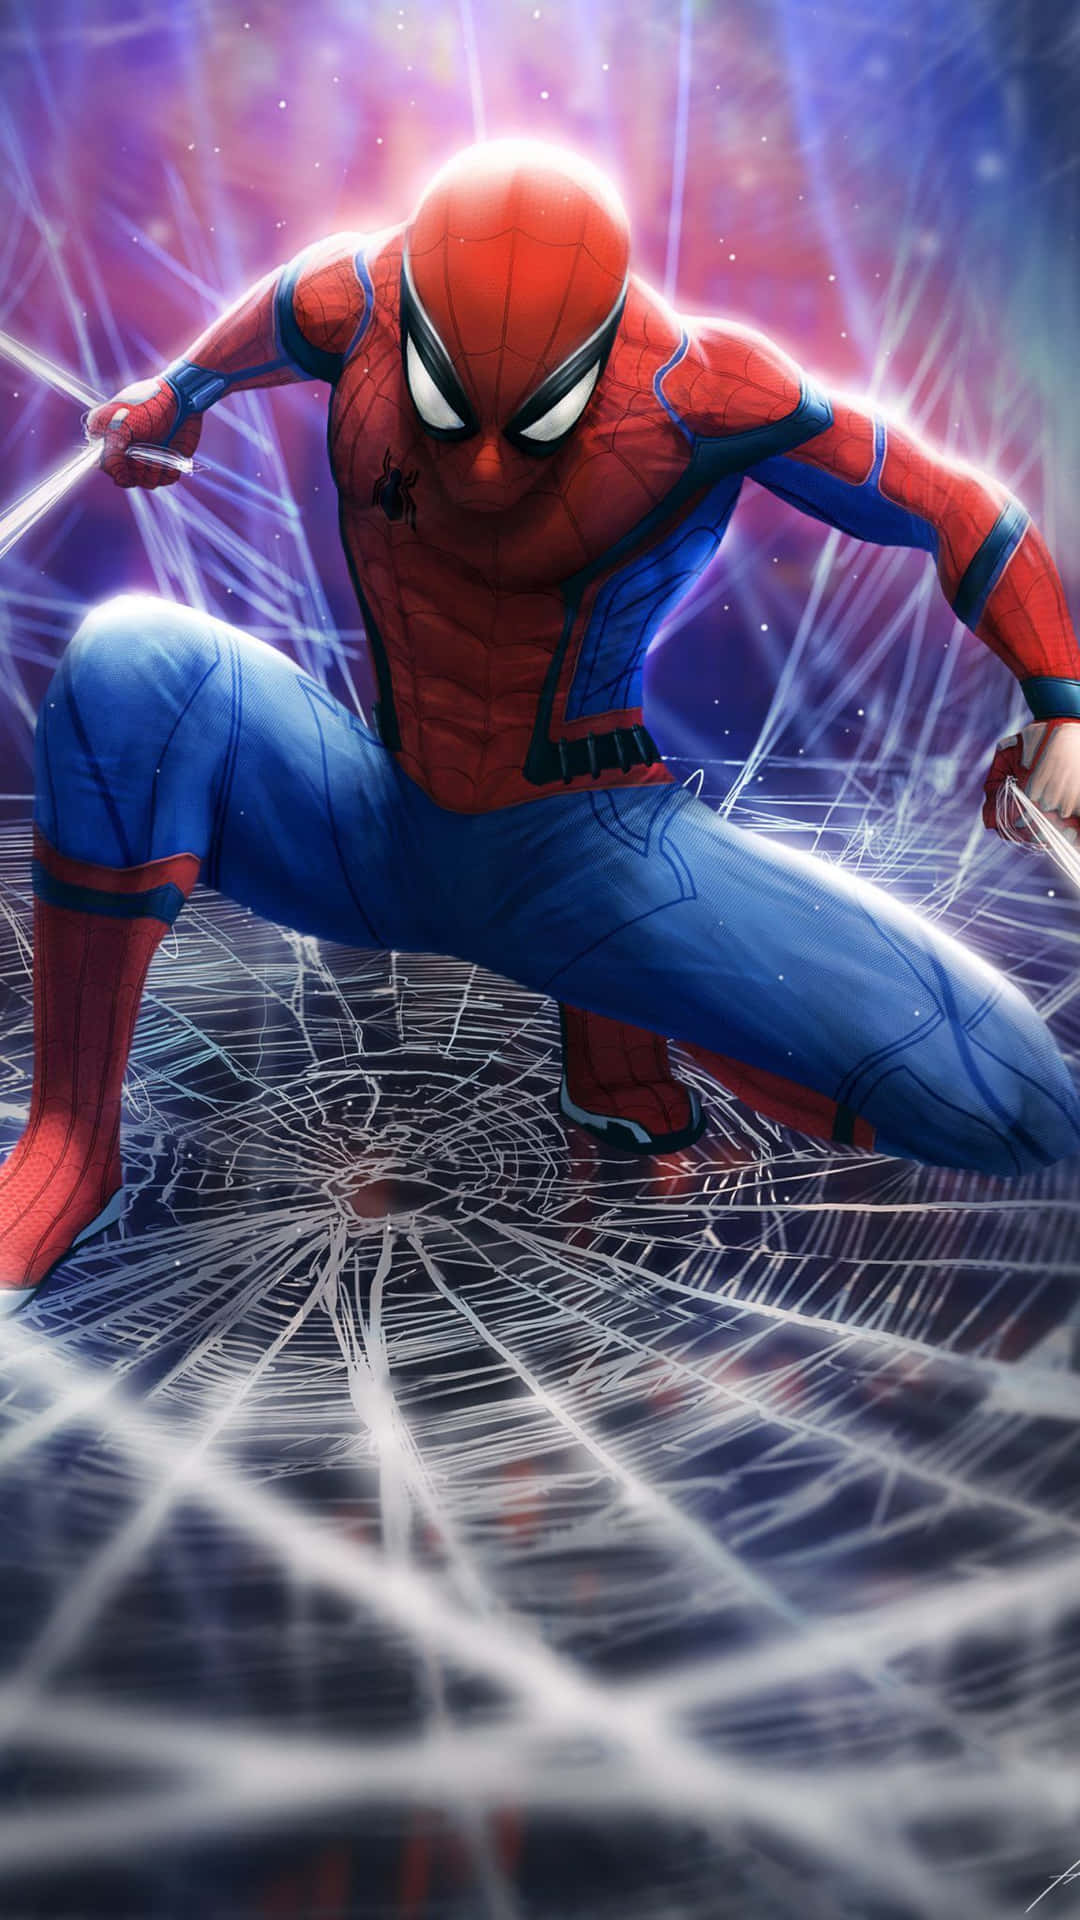 Peter Parker A.K.A. Best Spider Man Wallpaper